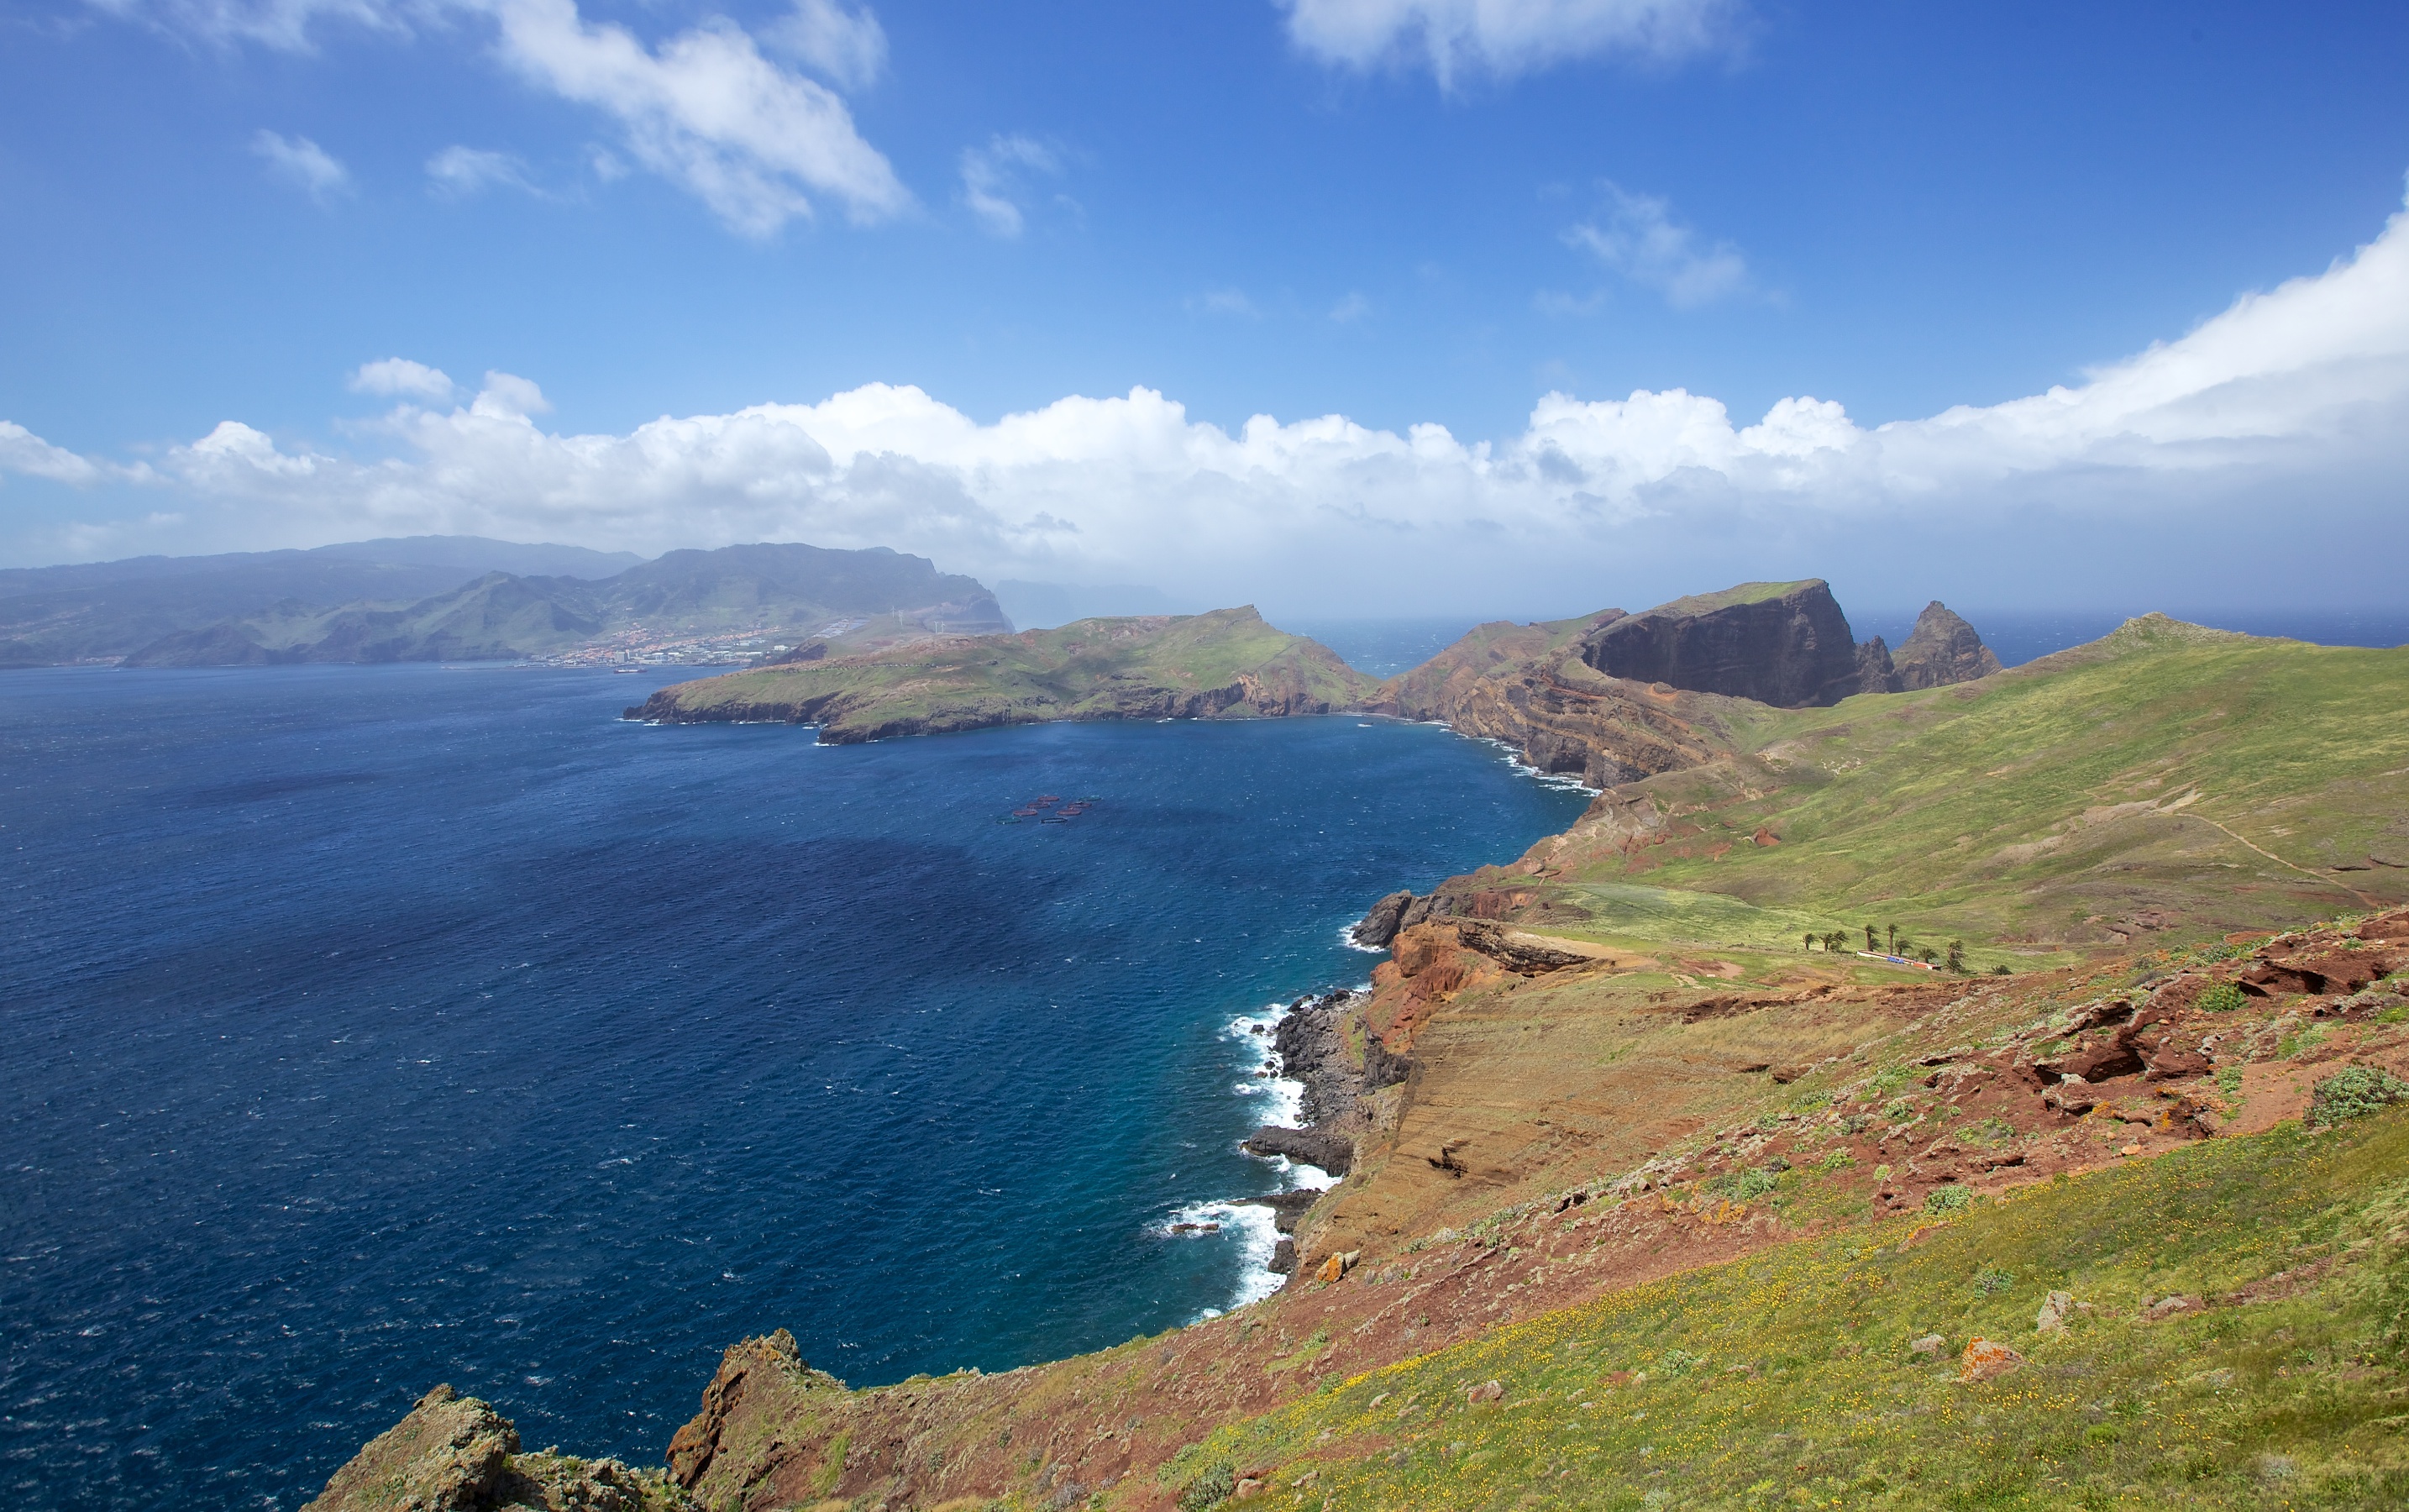 Oferta de viaje a Madeira: 8 días por 519€